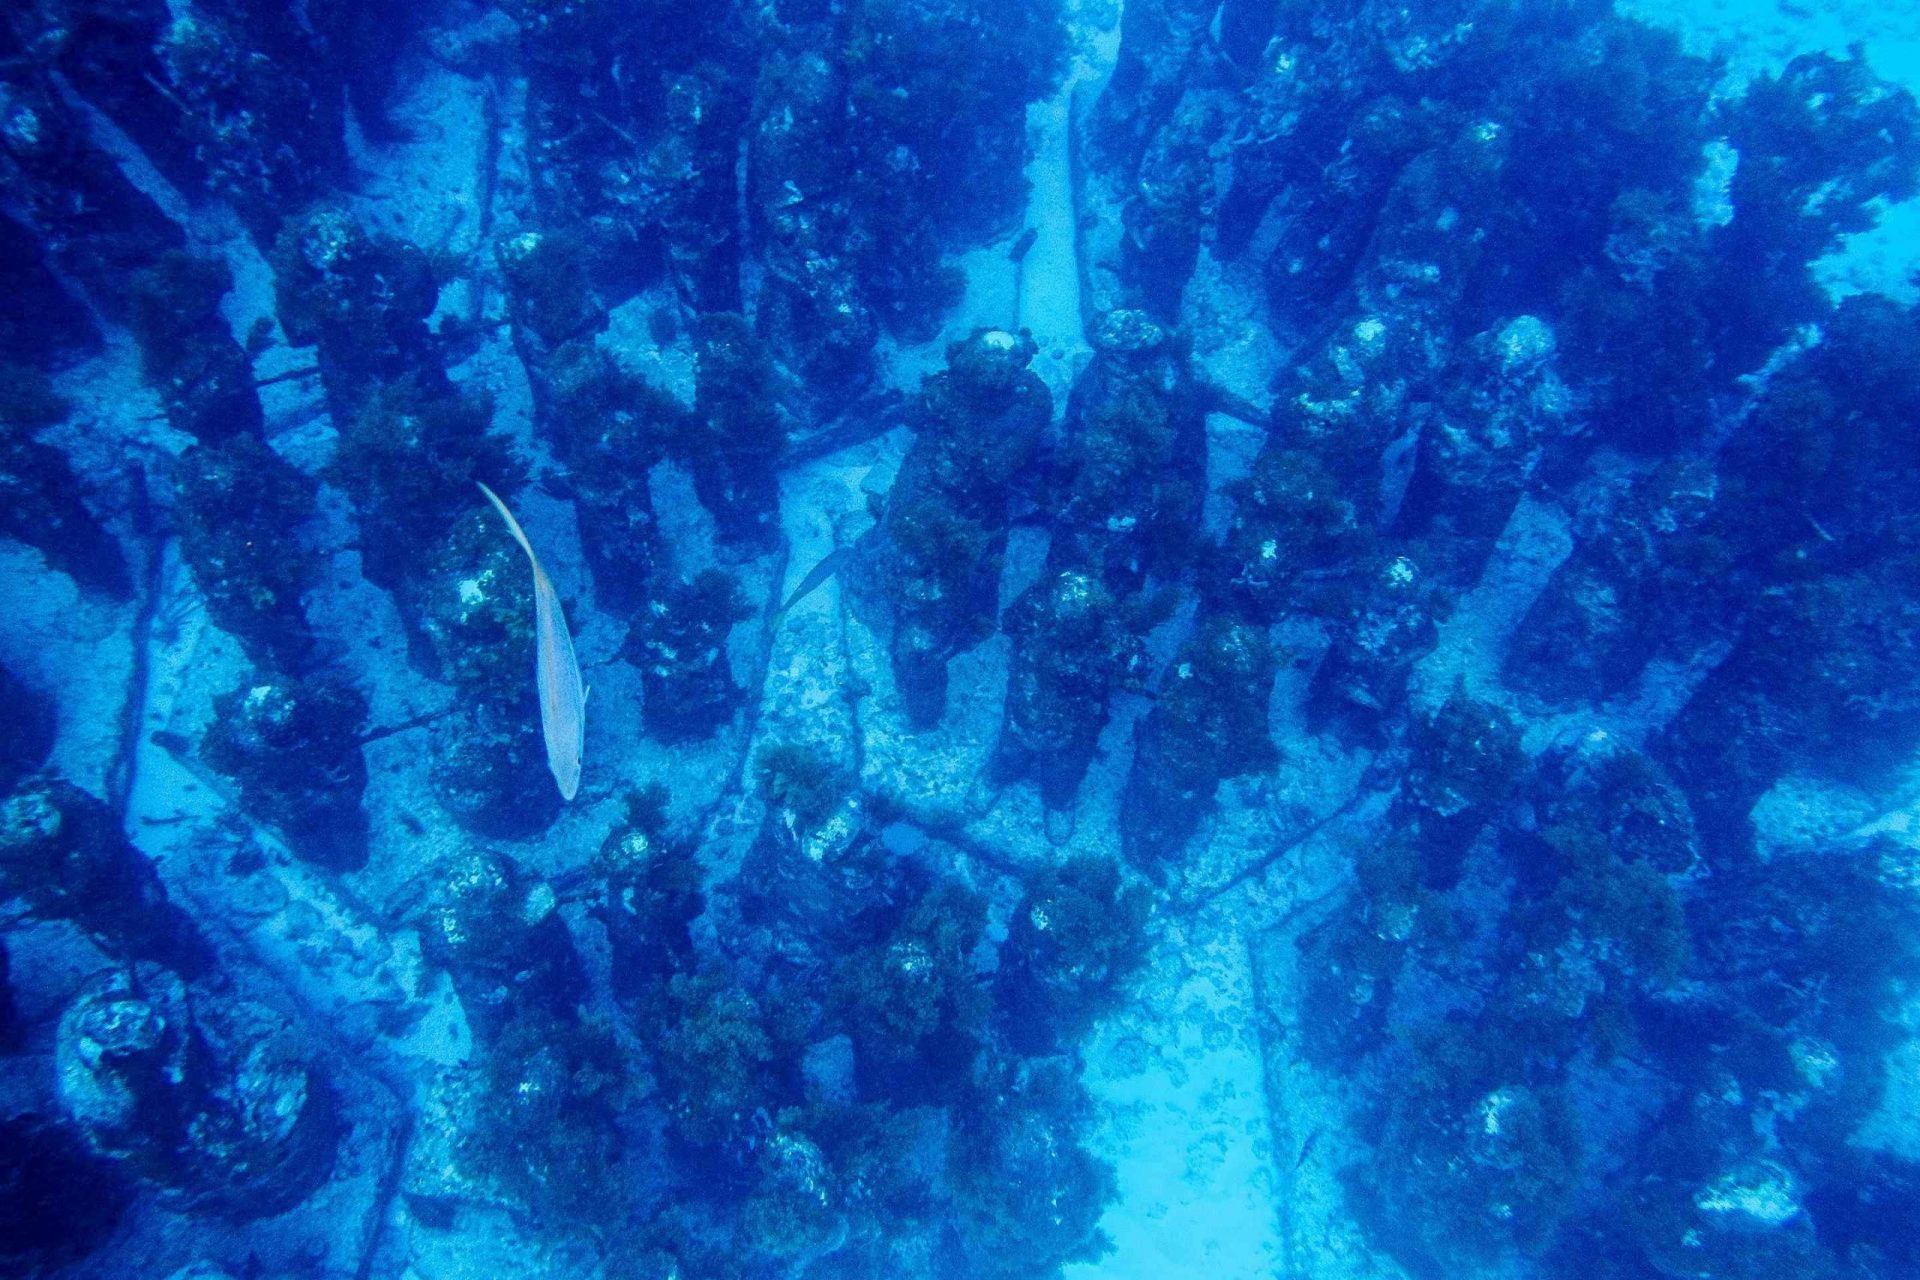 Una colección de estatuas submarinas en el fondo del océano, con un pez nadando sobre ellas